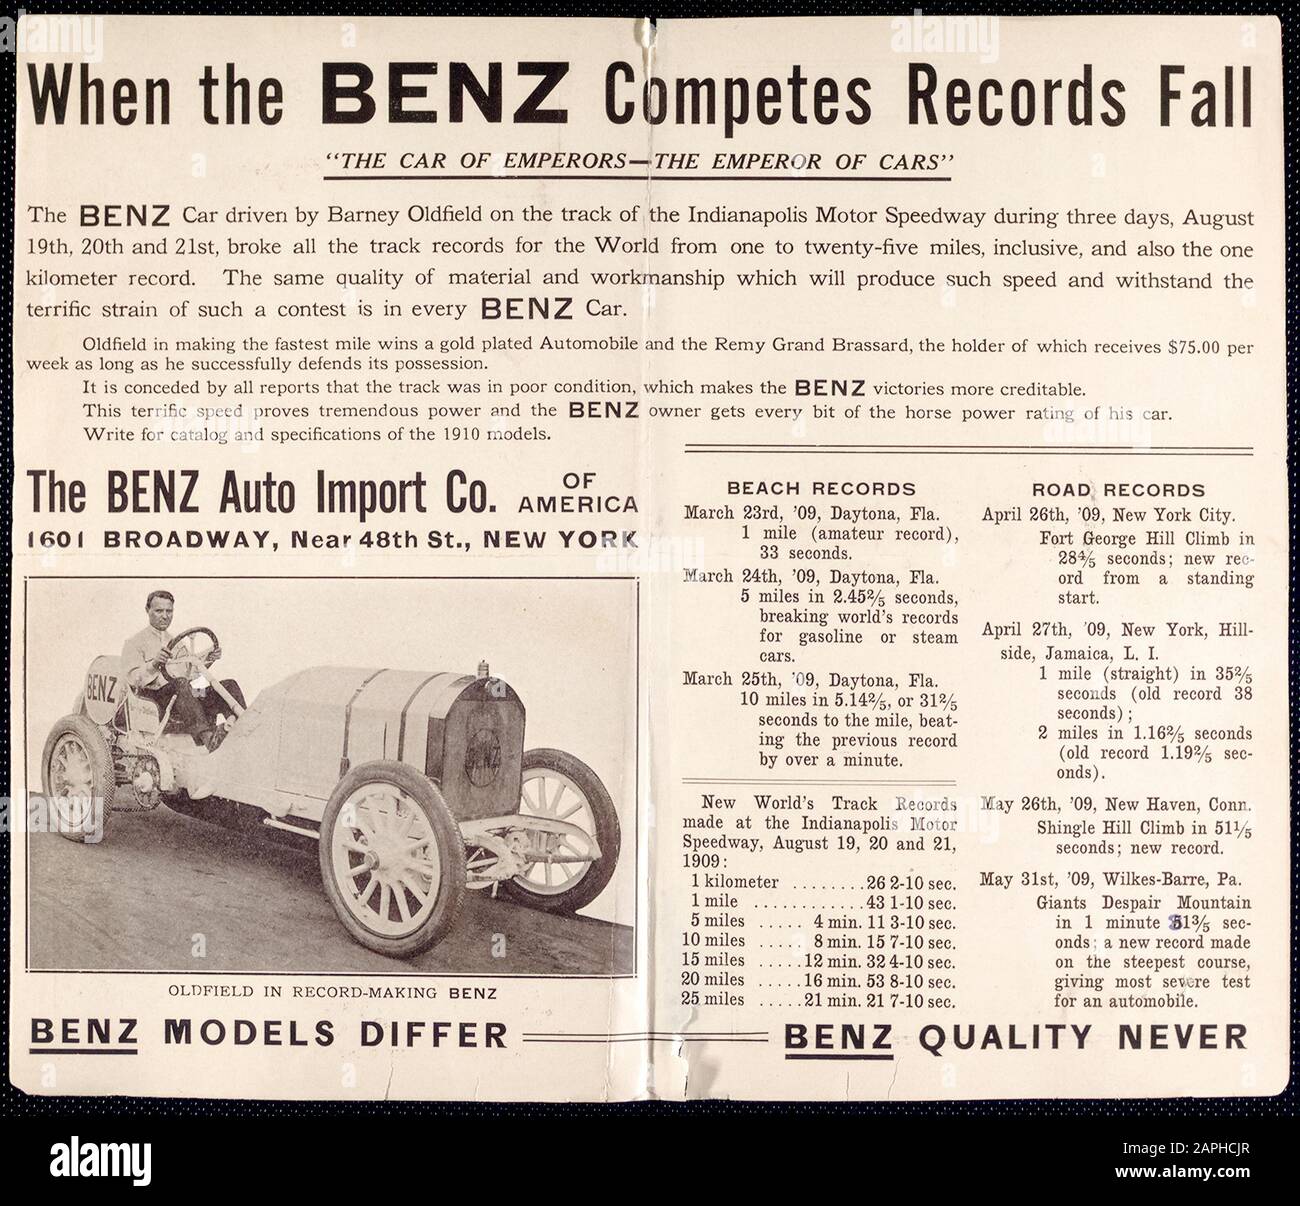 Coche Vintage, folleto de anuncios de automóviles Benz, coche de motor, Cuando el Benz compite los registros caen, el automóvil Benz conducido por Barney Oldfield, Oldfield en el Benz de registro-fabricación, fotografía, 1909 Foto de stock